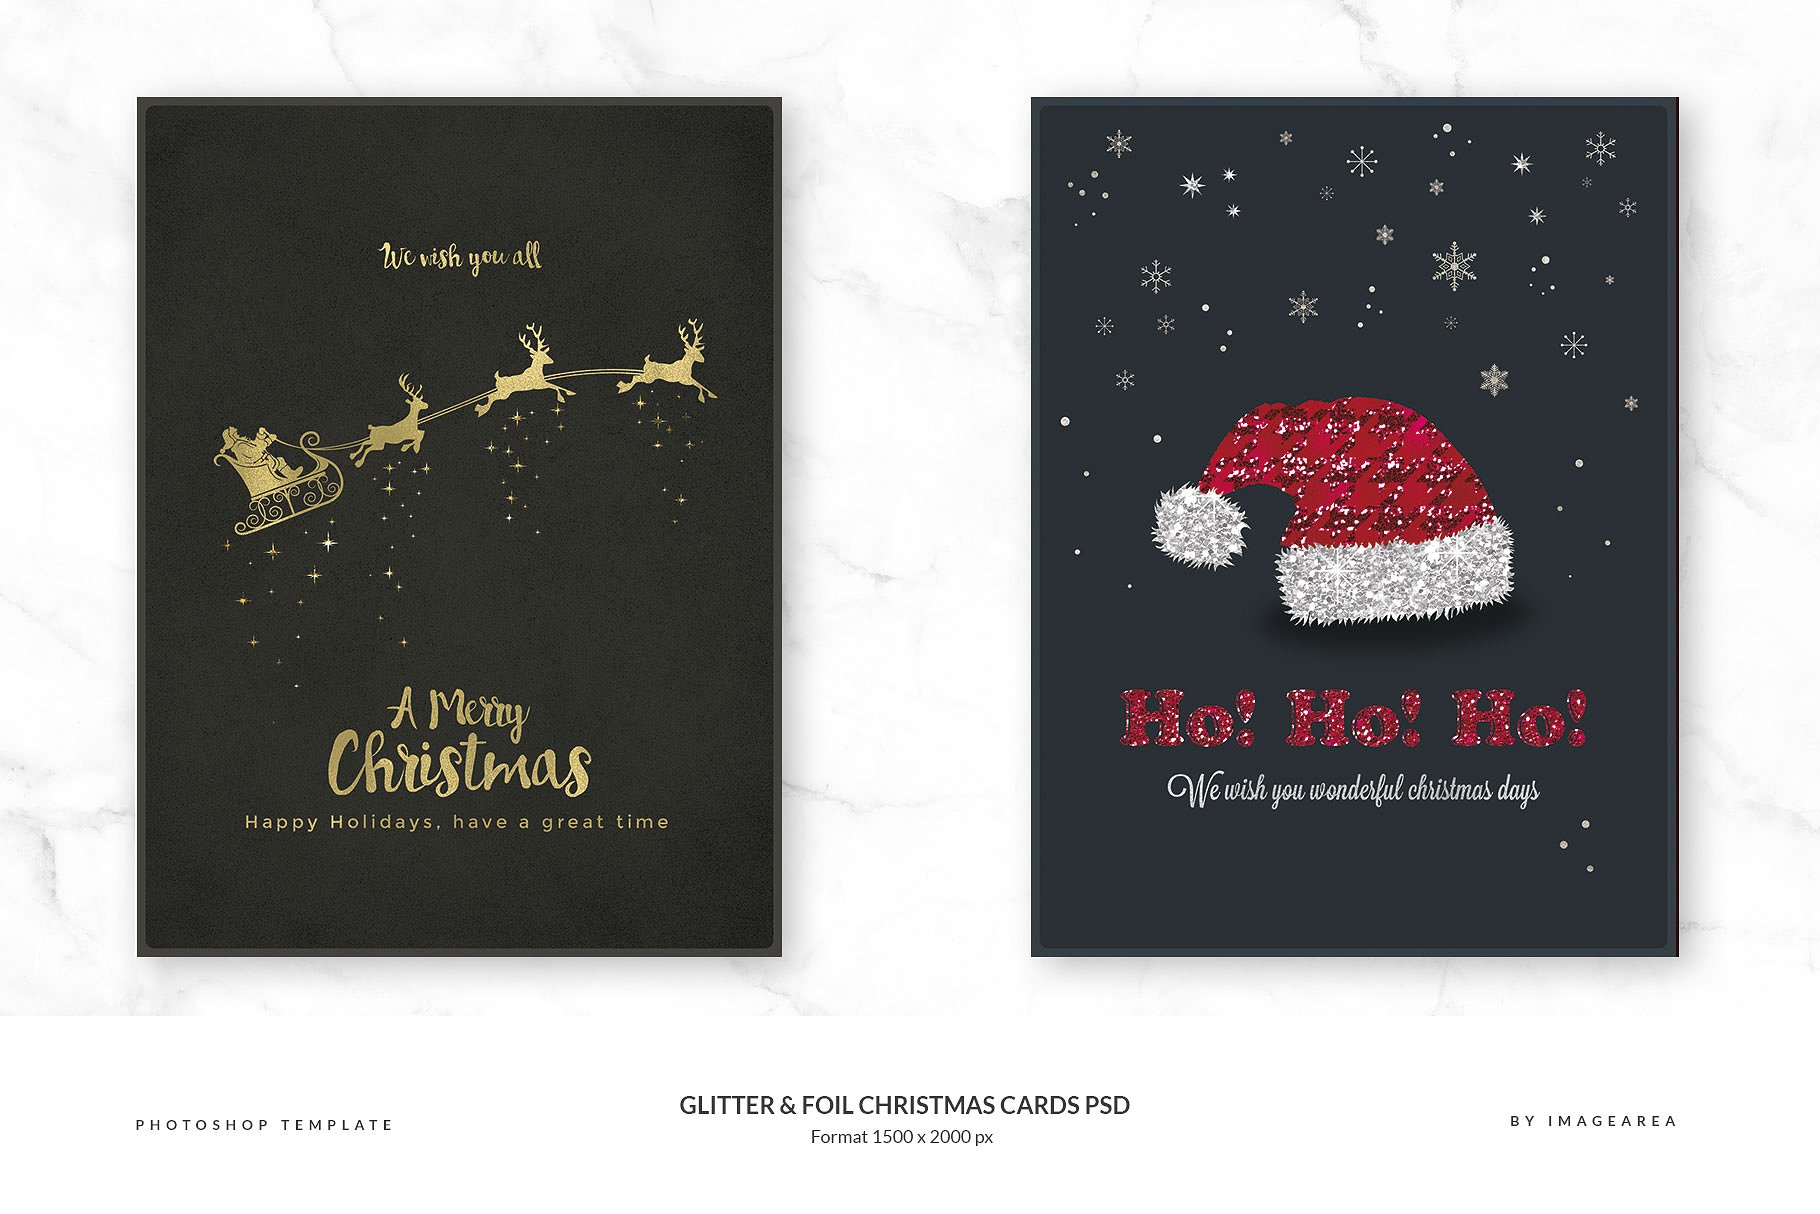 闪粉&金箔圣诞卡PSD模板合集 Glitter & Foil Christmas Cards PSD插图(1)